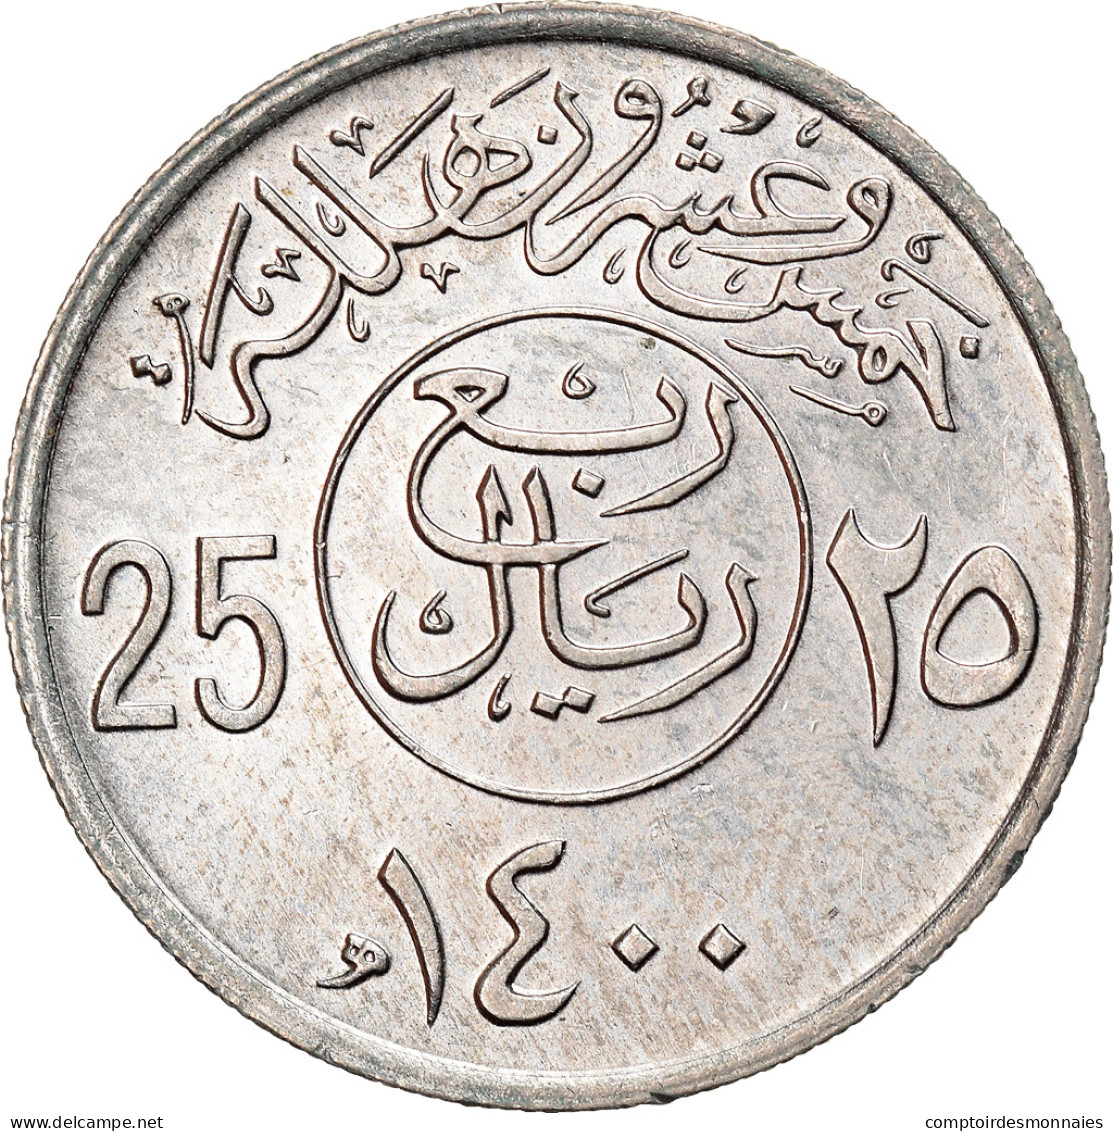 Monnaie, Saudi Arabia, UNITED KINGDOMS, 25 Halala, 1/4 Riyal, 1980/AH1400, SUP - Arabie Saoudite